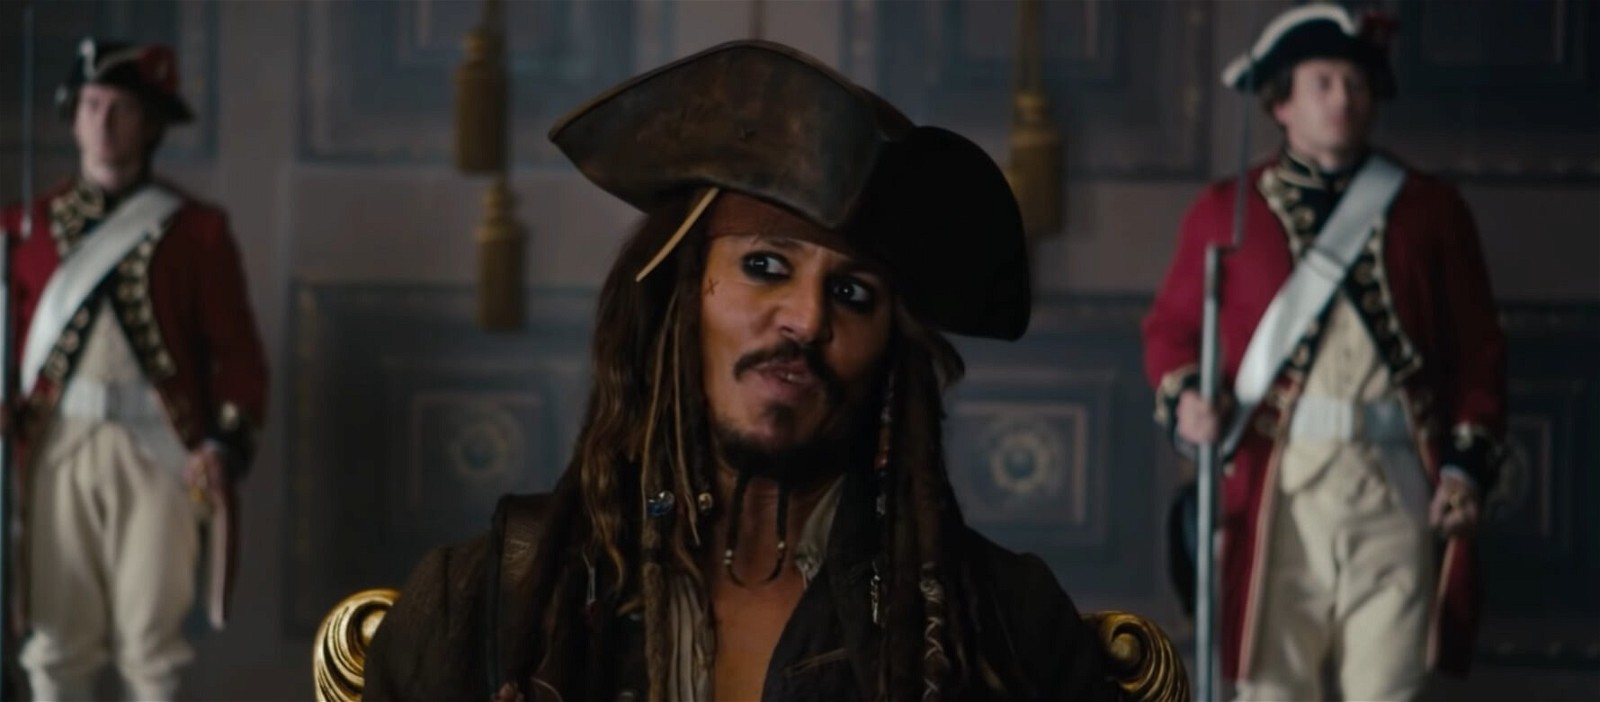 «Это будет так сильно бомбить»: каждый хардкорный фанат Джонни Деппа высмеивает новые женские «Пираты Карибского моря 6» от Disney с Айо Эдебири